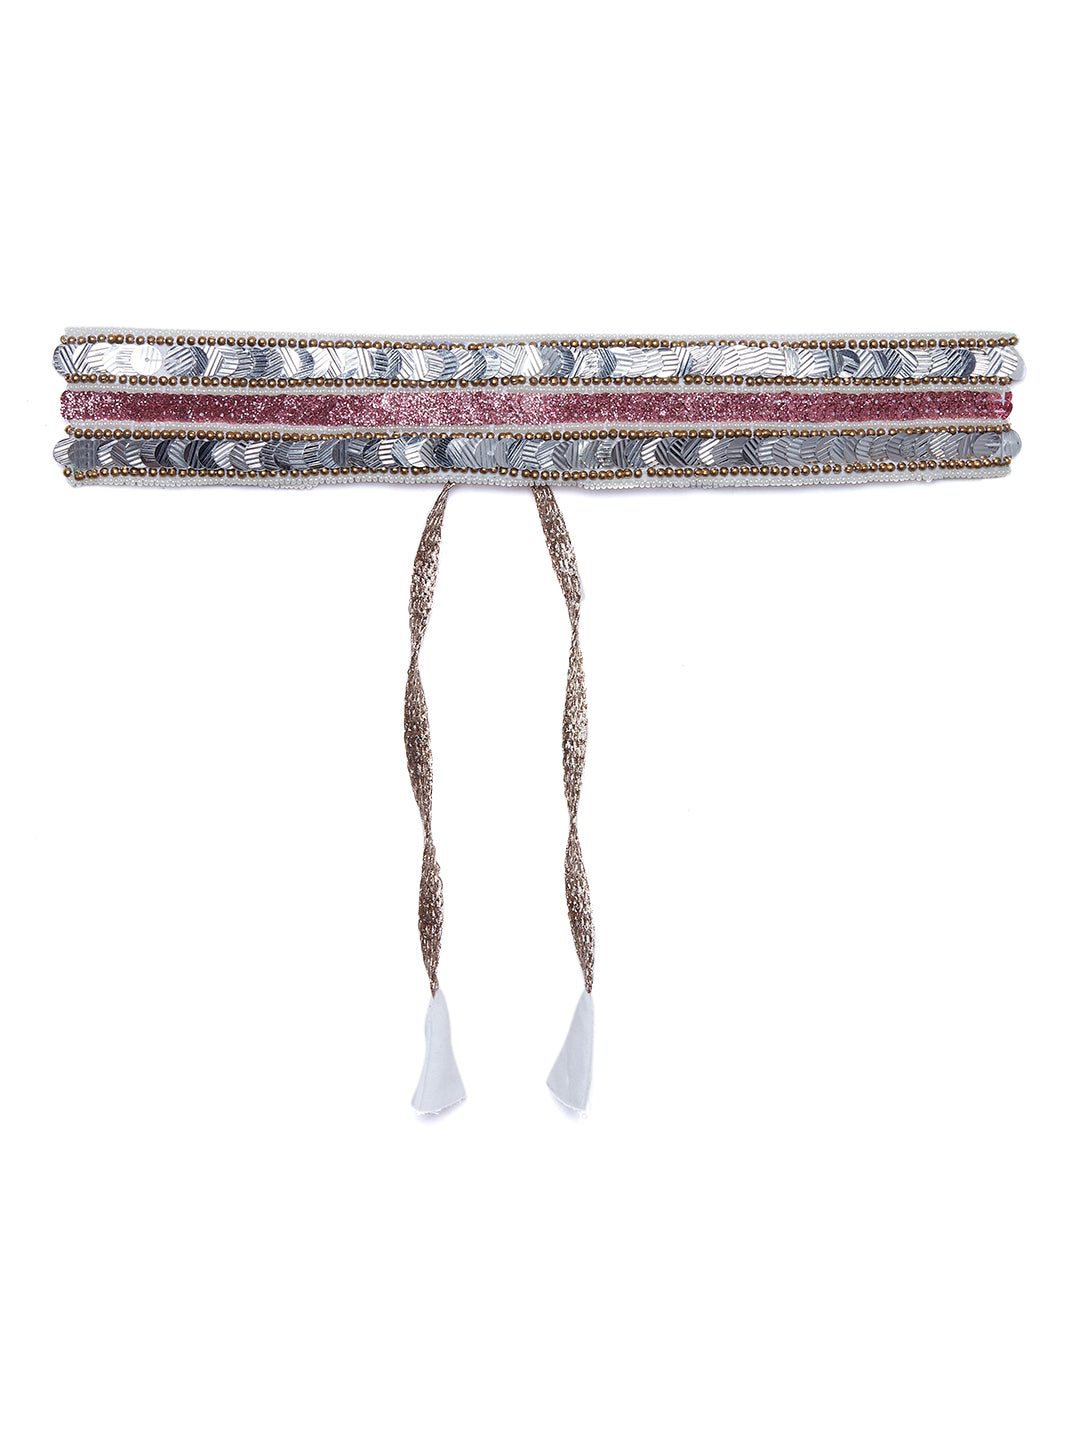 Athena Women Silver-Toned Embellished Belt - Athena Lifestyle